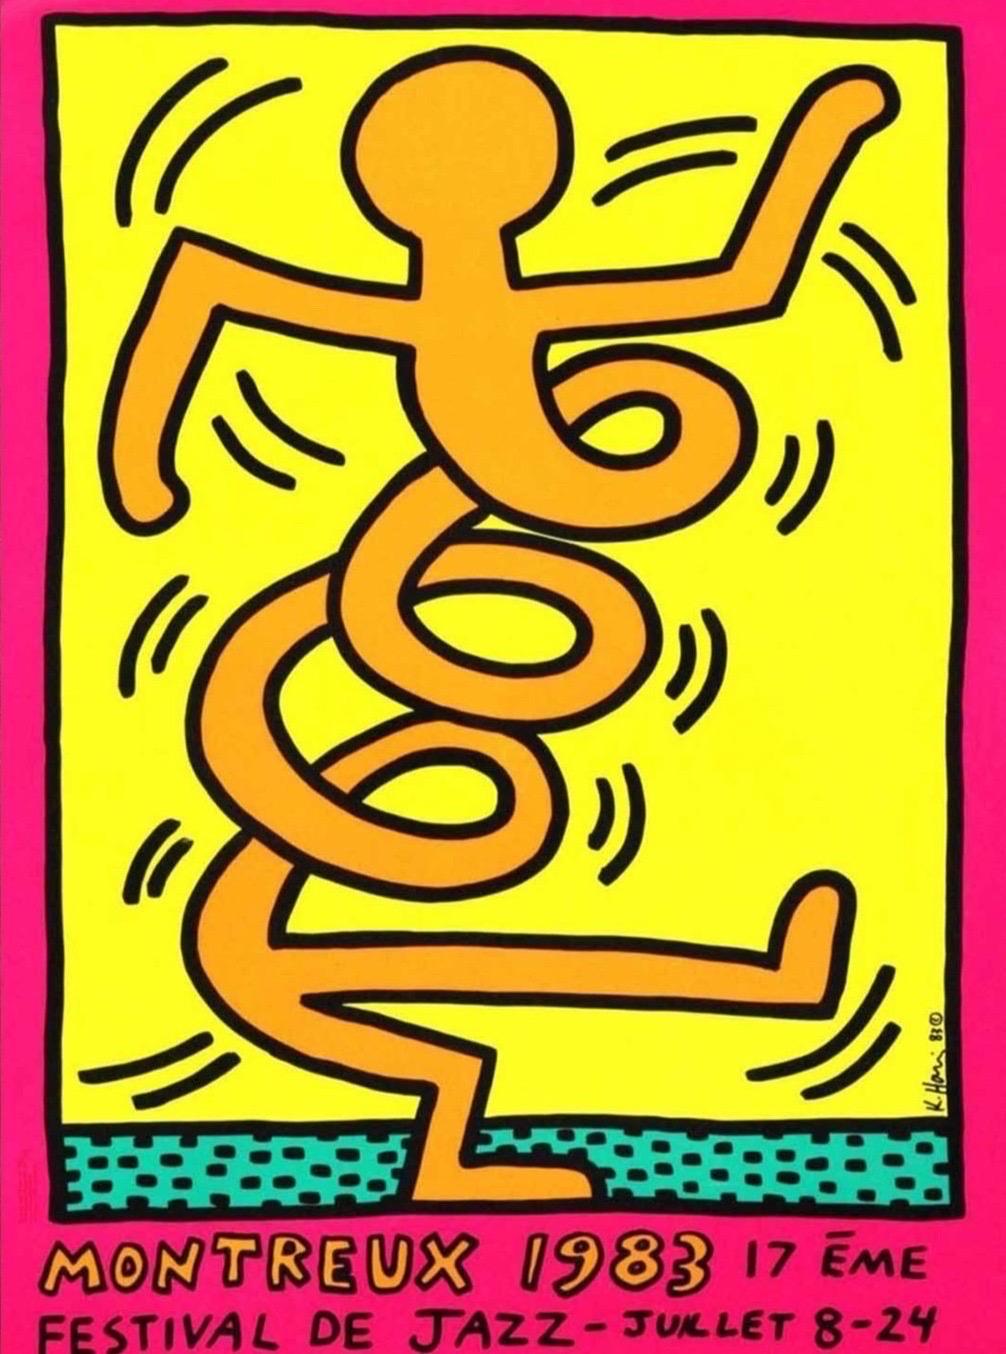 1983 Keith Haring Montreux Jazz Festival Rosa Originalplakat

Keith Haring wurde eingeladen, die Plakate für das 17. Montreux Jazz Festival 1983 zu gestalten, nachdem der Organisator Pierre Keller den Künstler einige Monate nach seiner ersten